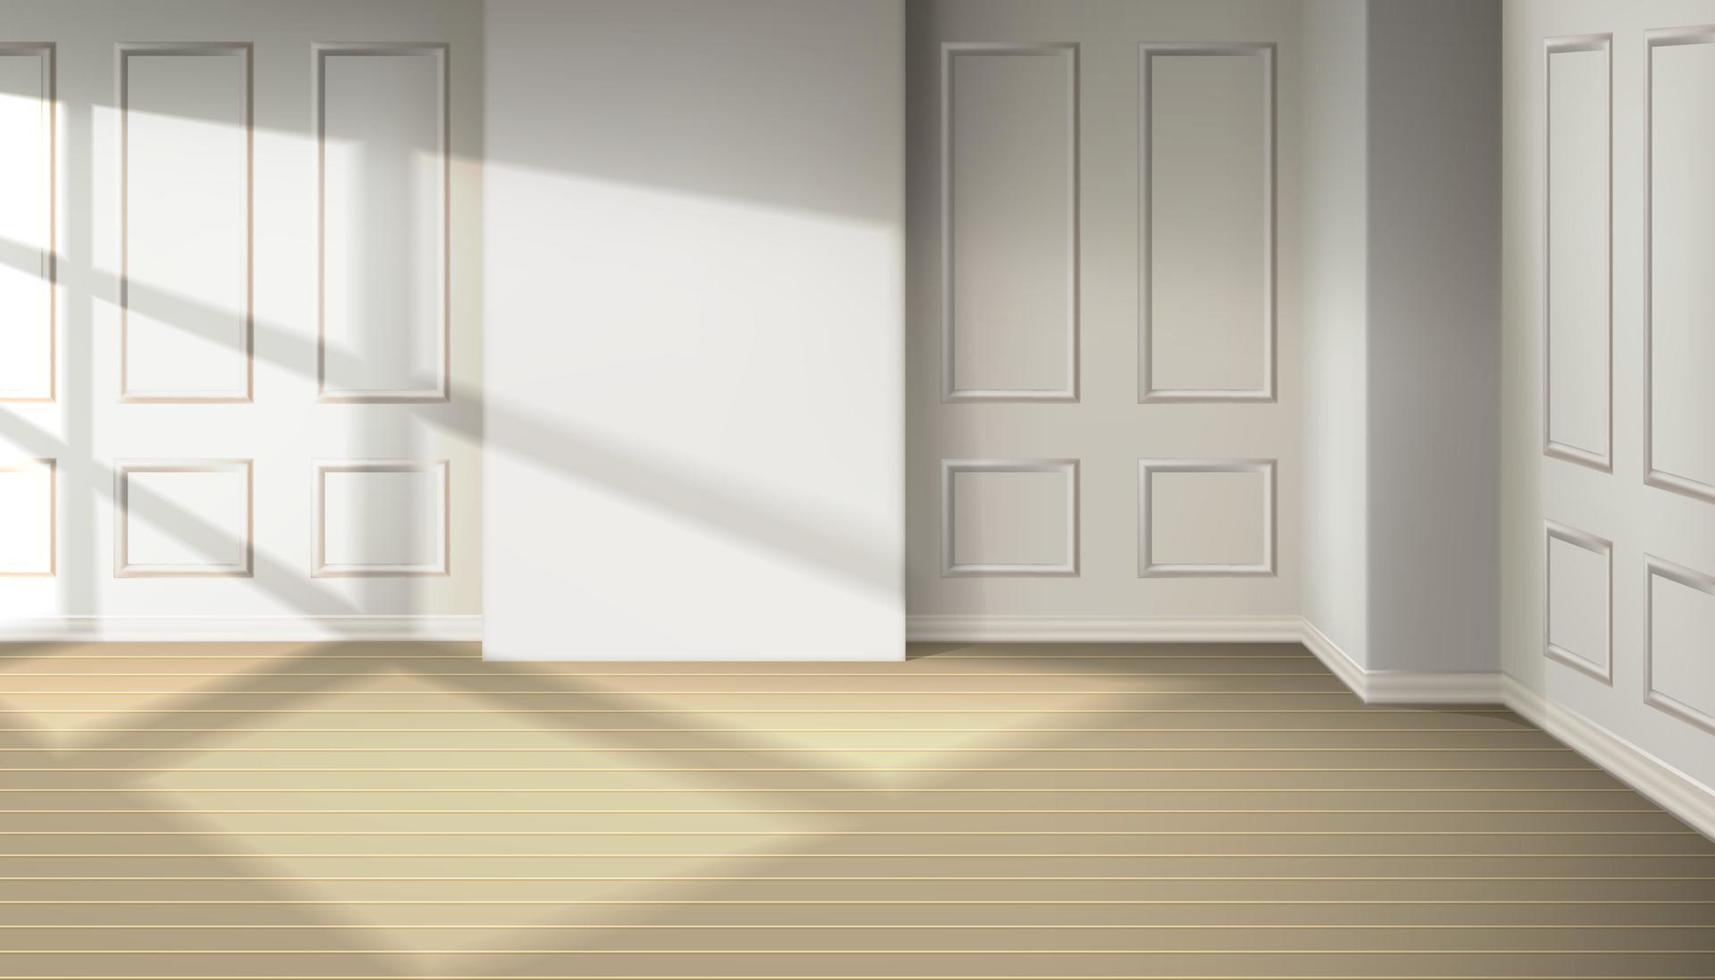 Habitación vectorial realista en 3d con luz desde la ventana. interior de diseño de habitación de apartamento, oficina. efecto de sombra natural desde la ventana en el suelo de madera. vector